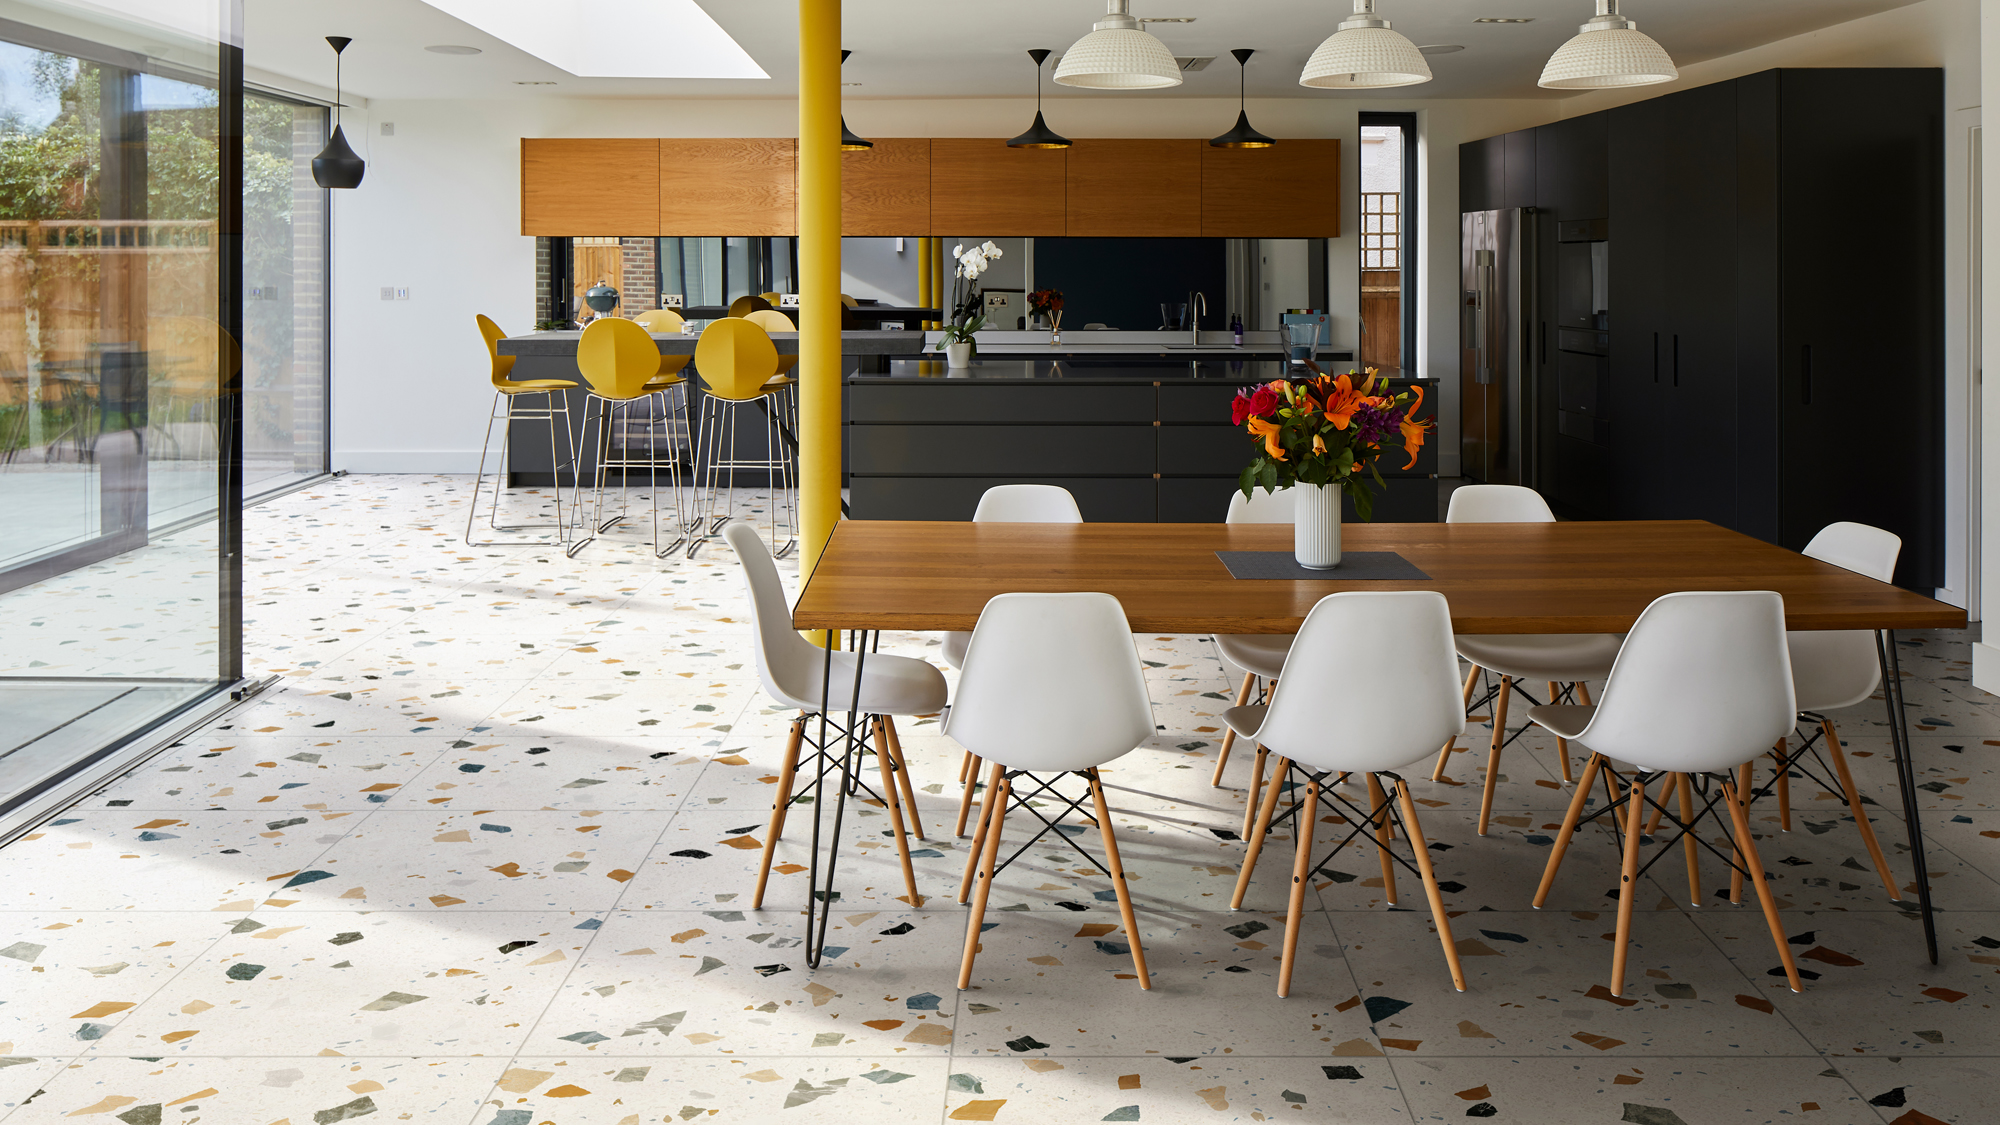 Kitchen Floor Tile Ideas 14 Durable, Tile Colors For Kitchen Floor